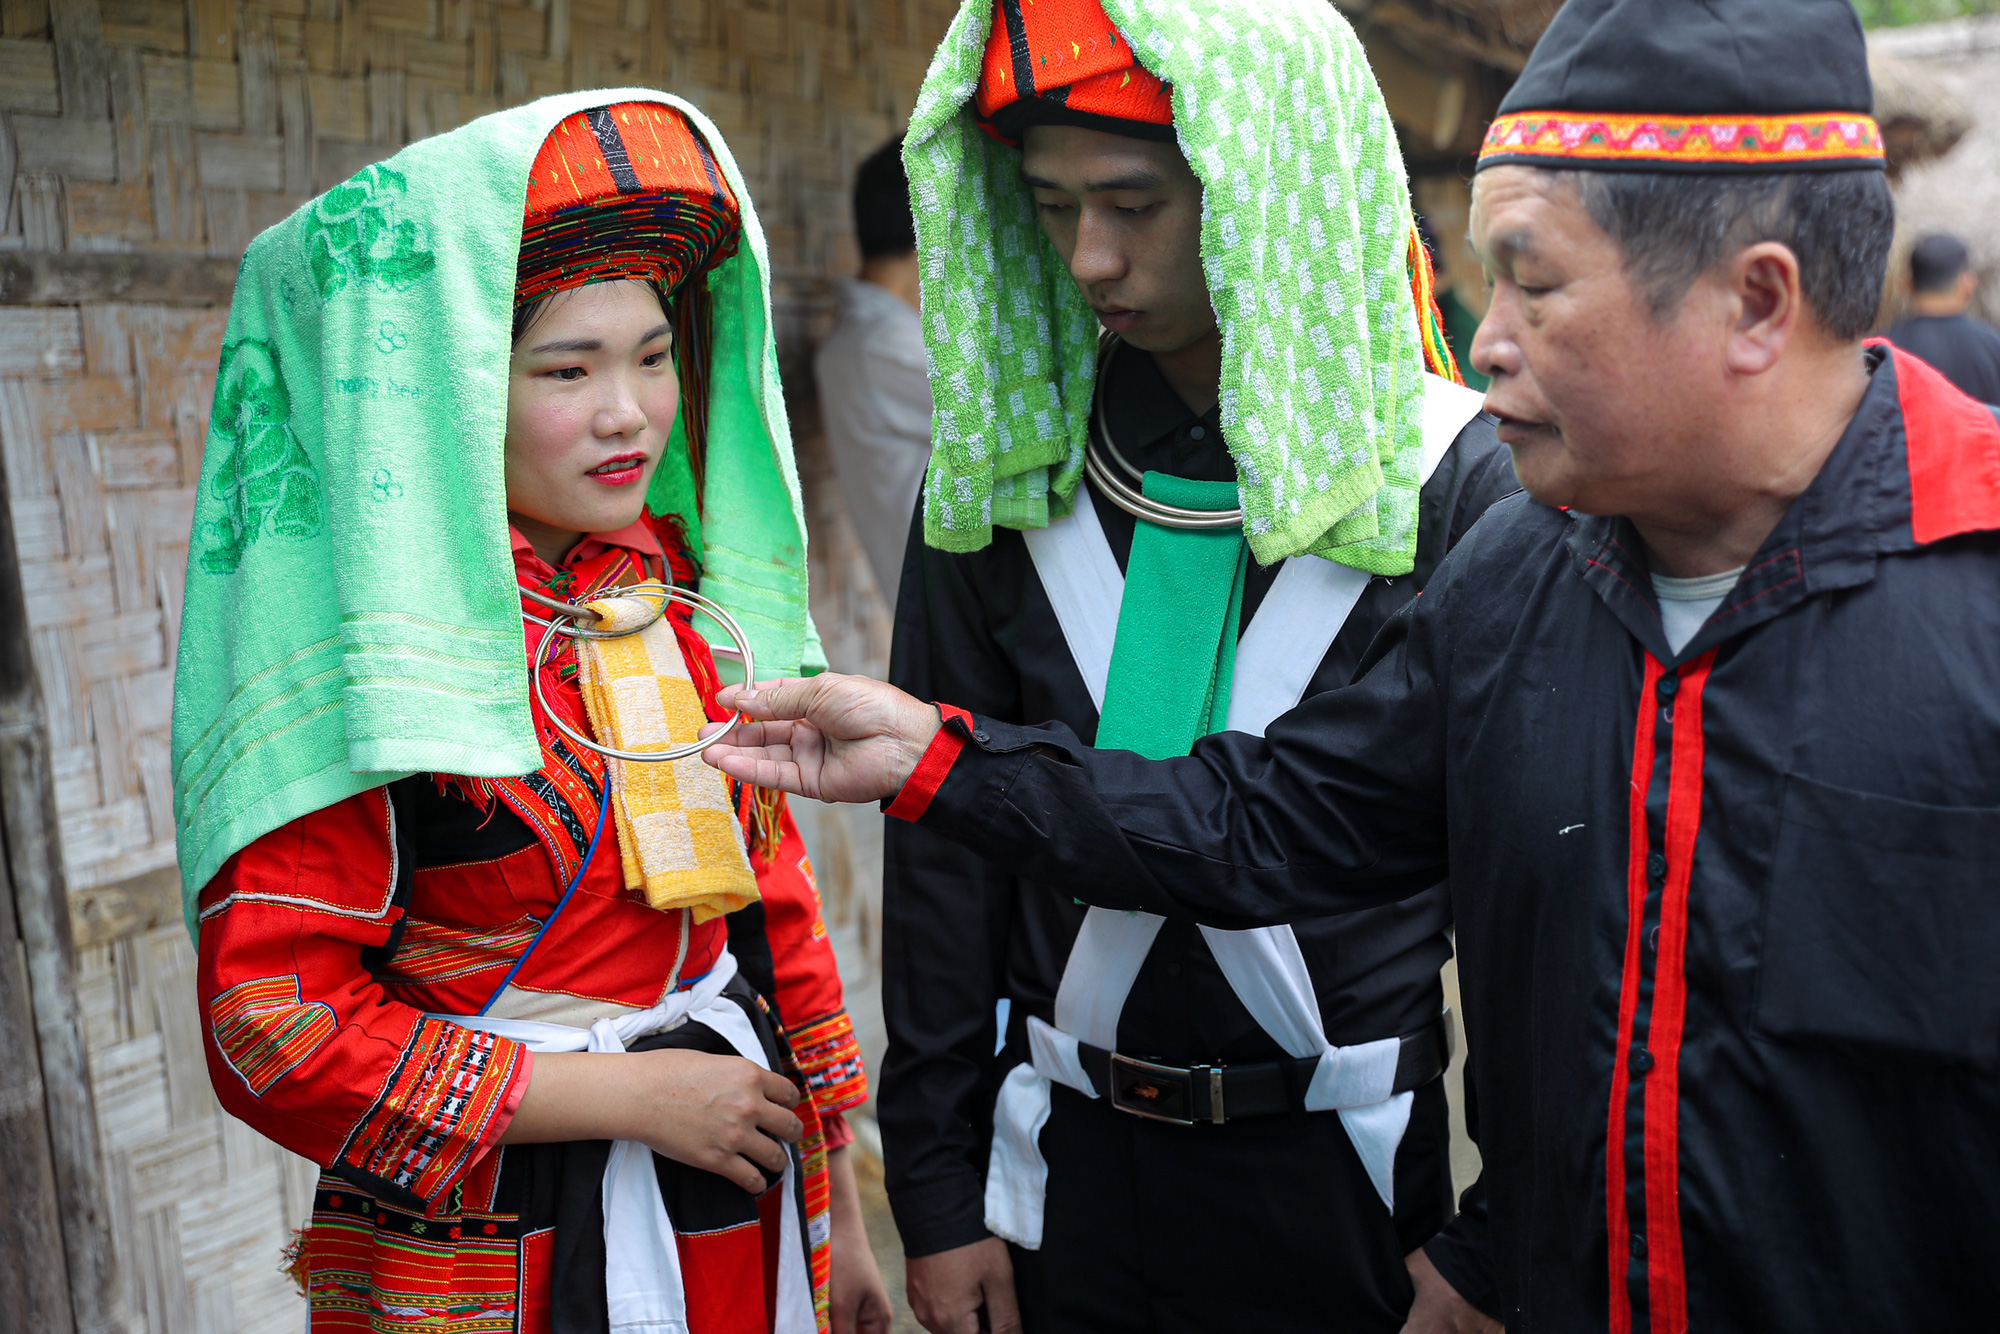 Tái hiện lễ cưới của Dân tộc Pà Thẻn (Hà Giang) và nghi lễ Mừng lúa mới của dân tộc Bahnar (Gia Lai)  tại Hà Nội - Ảnh 3.